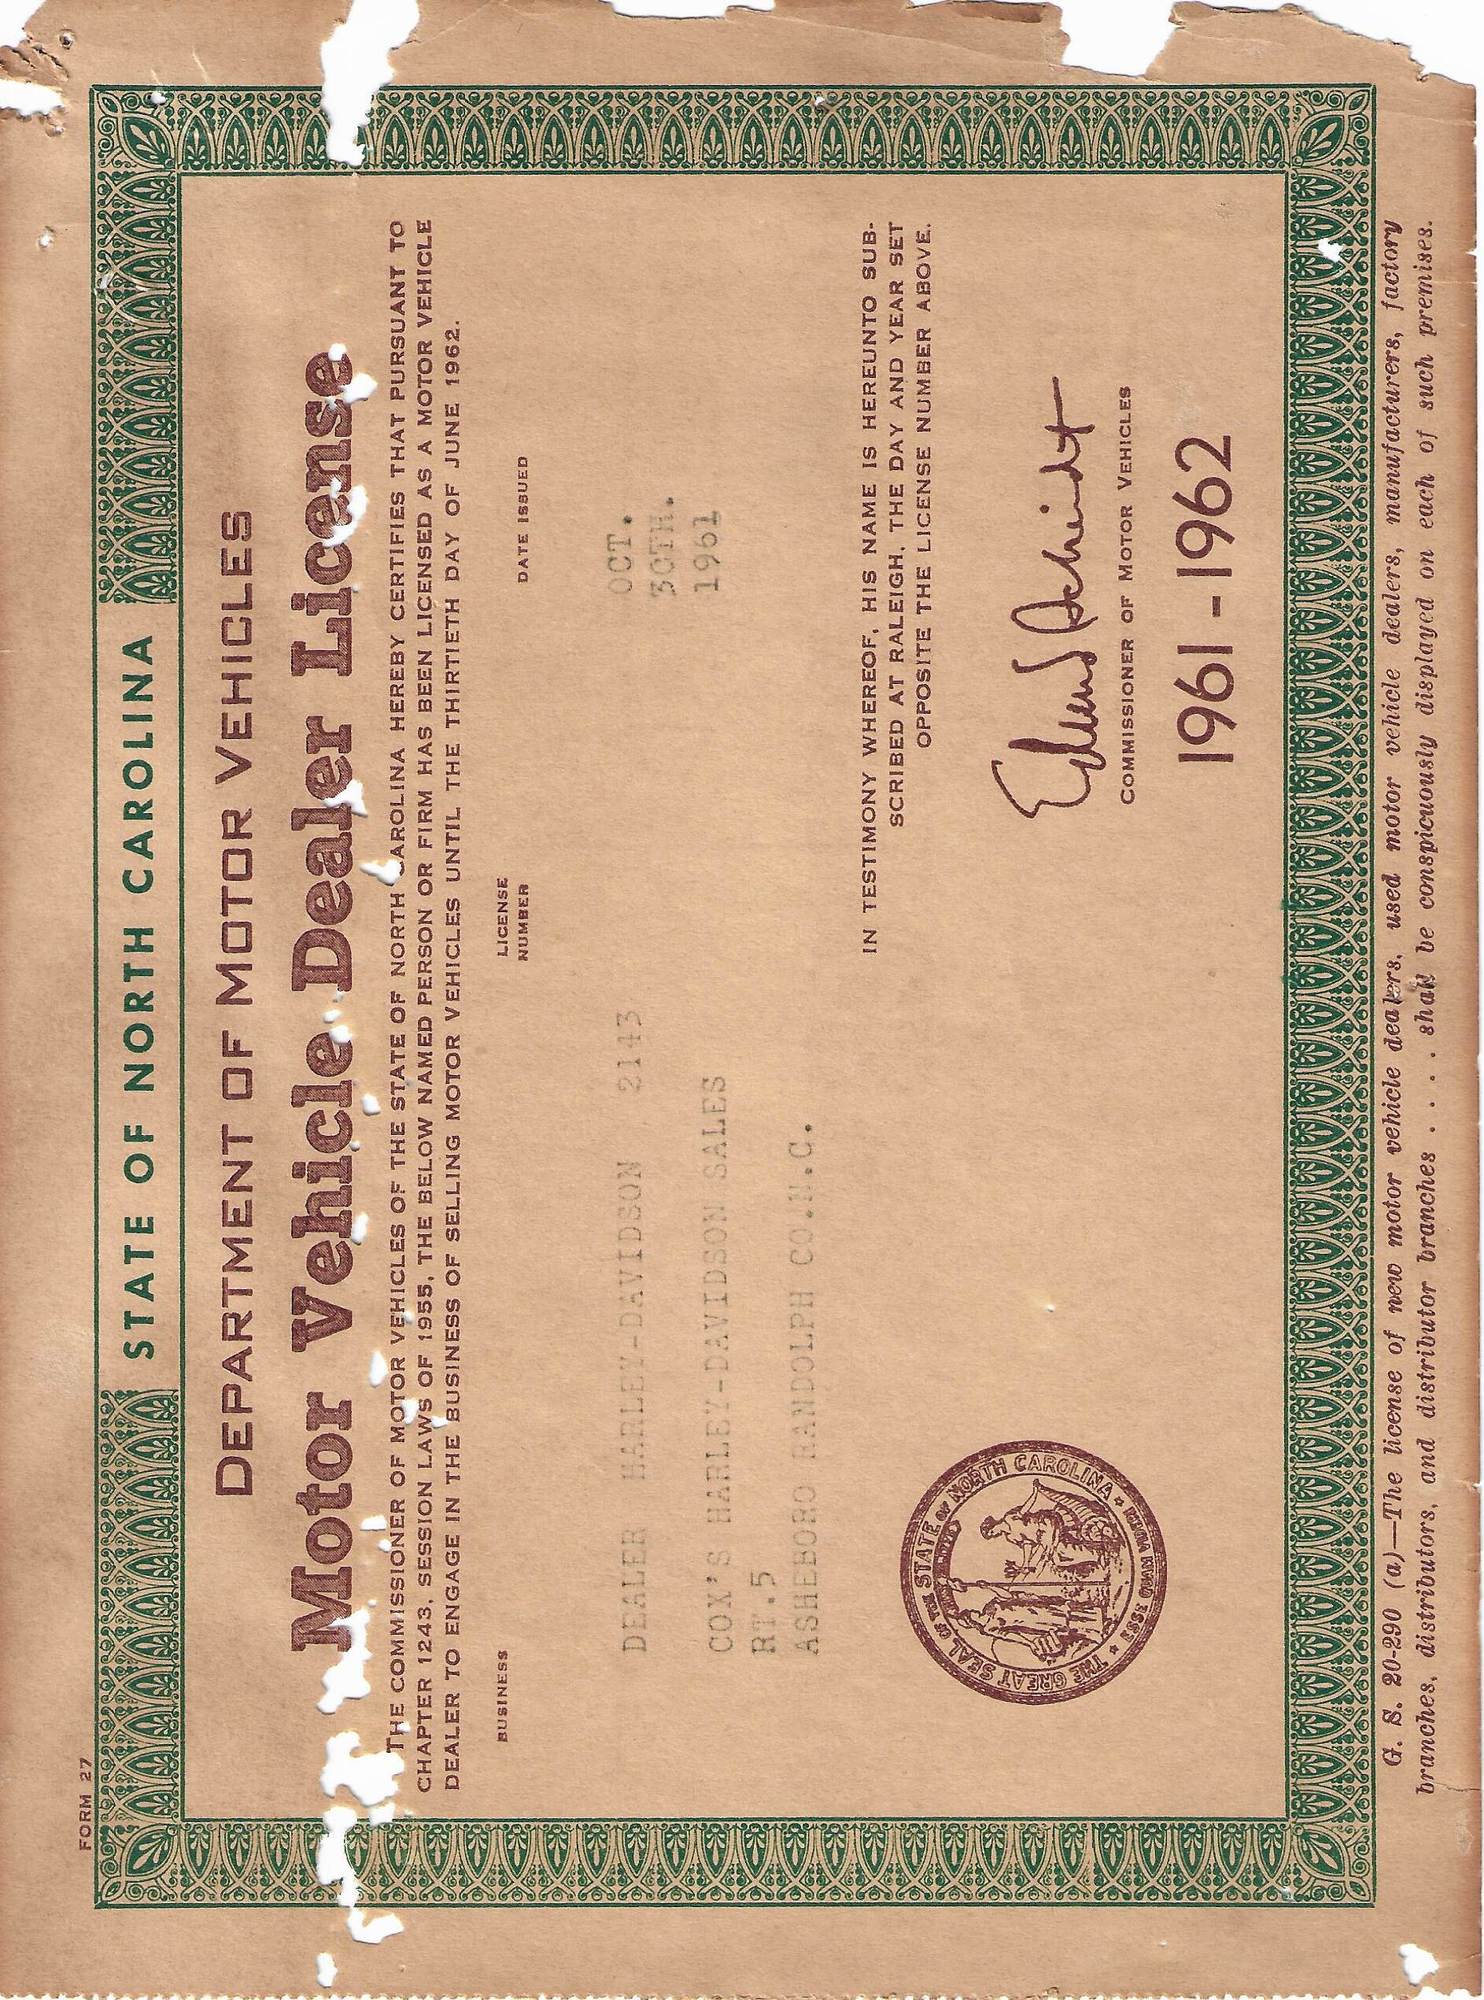 Motor Vehicle Dealer License #2